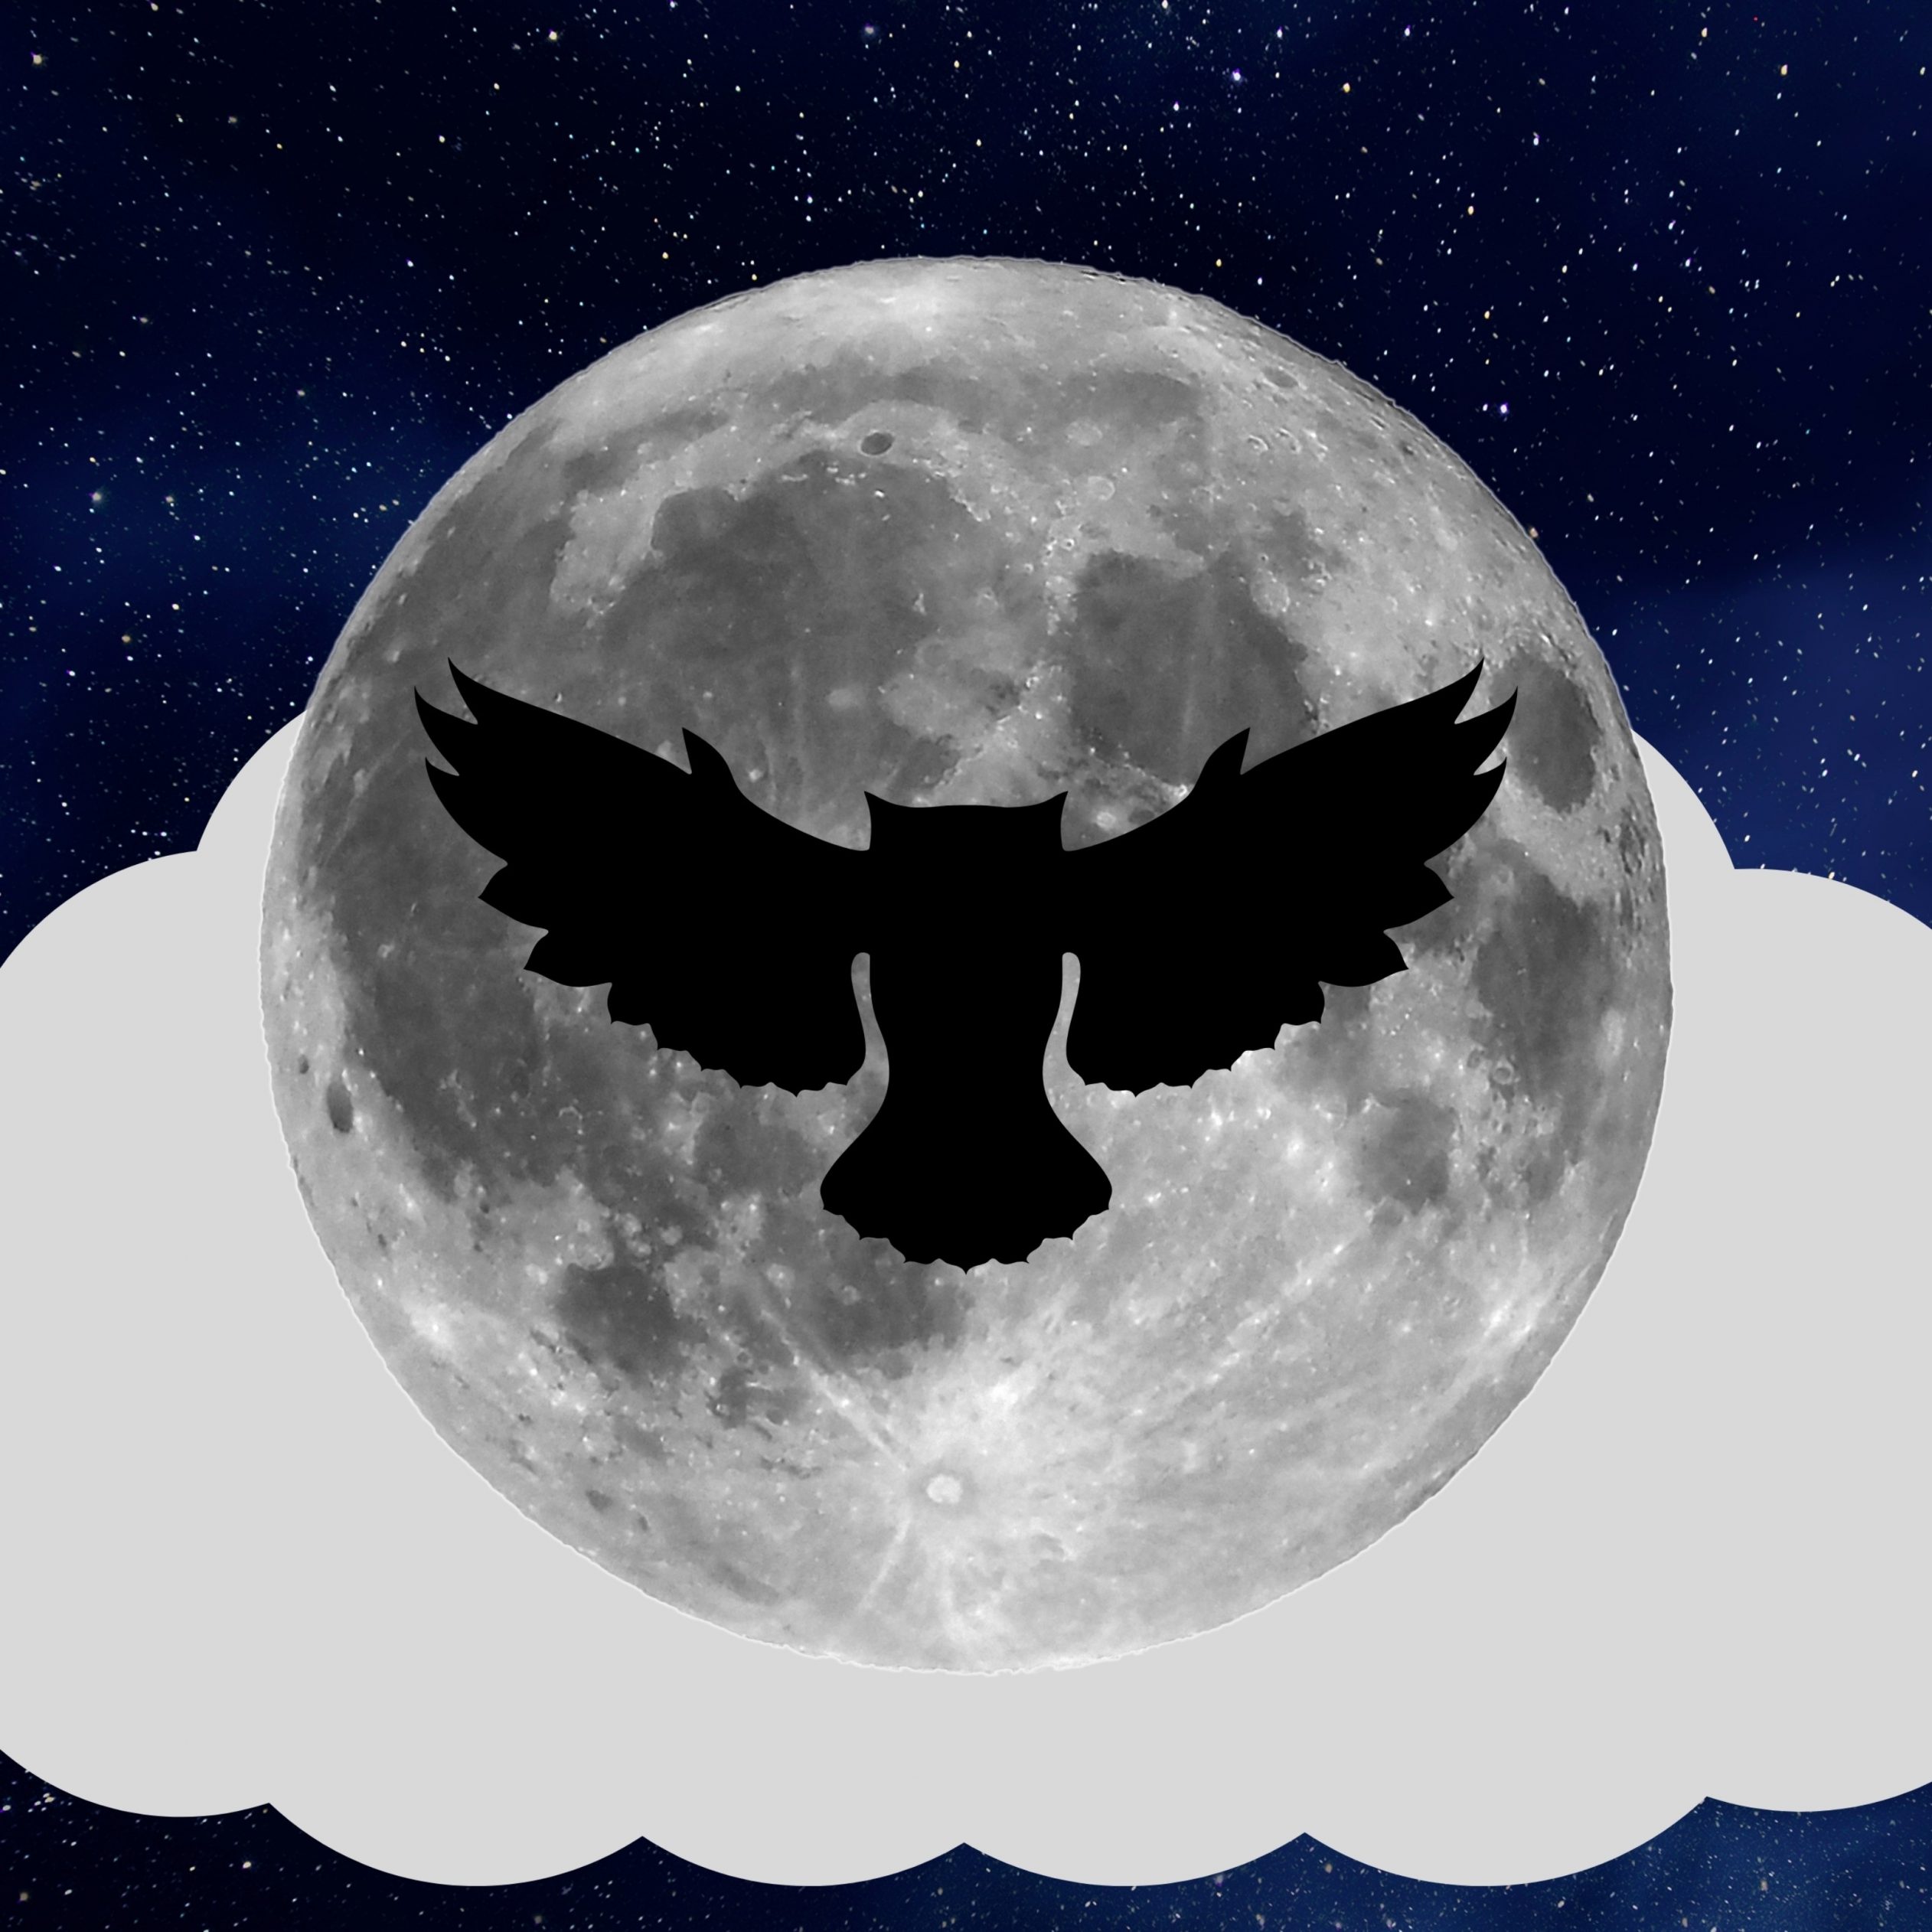 2524x2524 Parallax wallpaper 4k Night Owl Full Moon iPad Wallpaper 2524x2524 pixels resolution